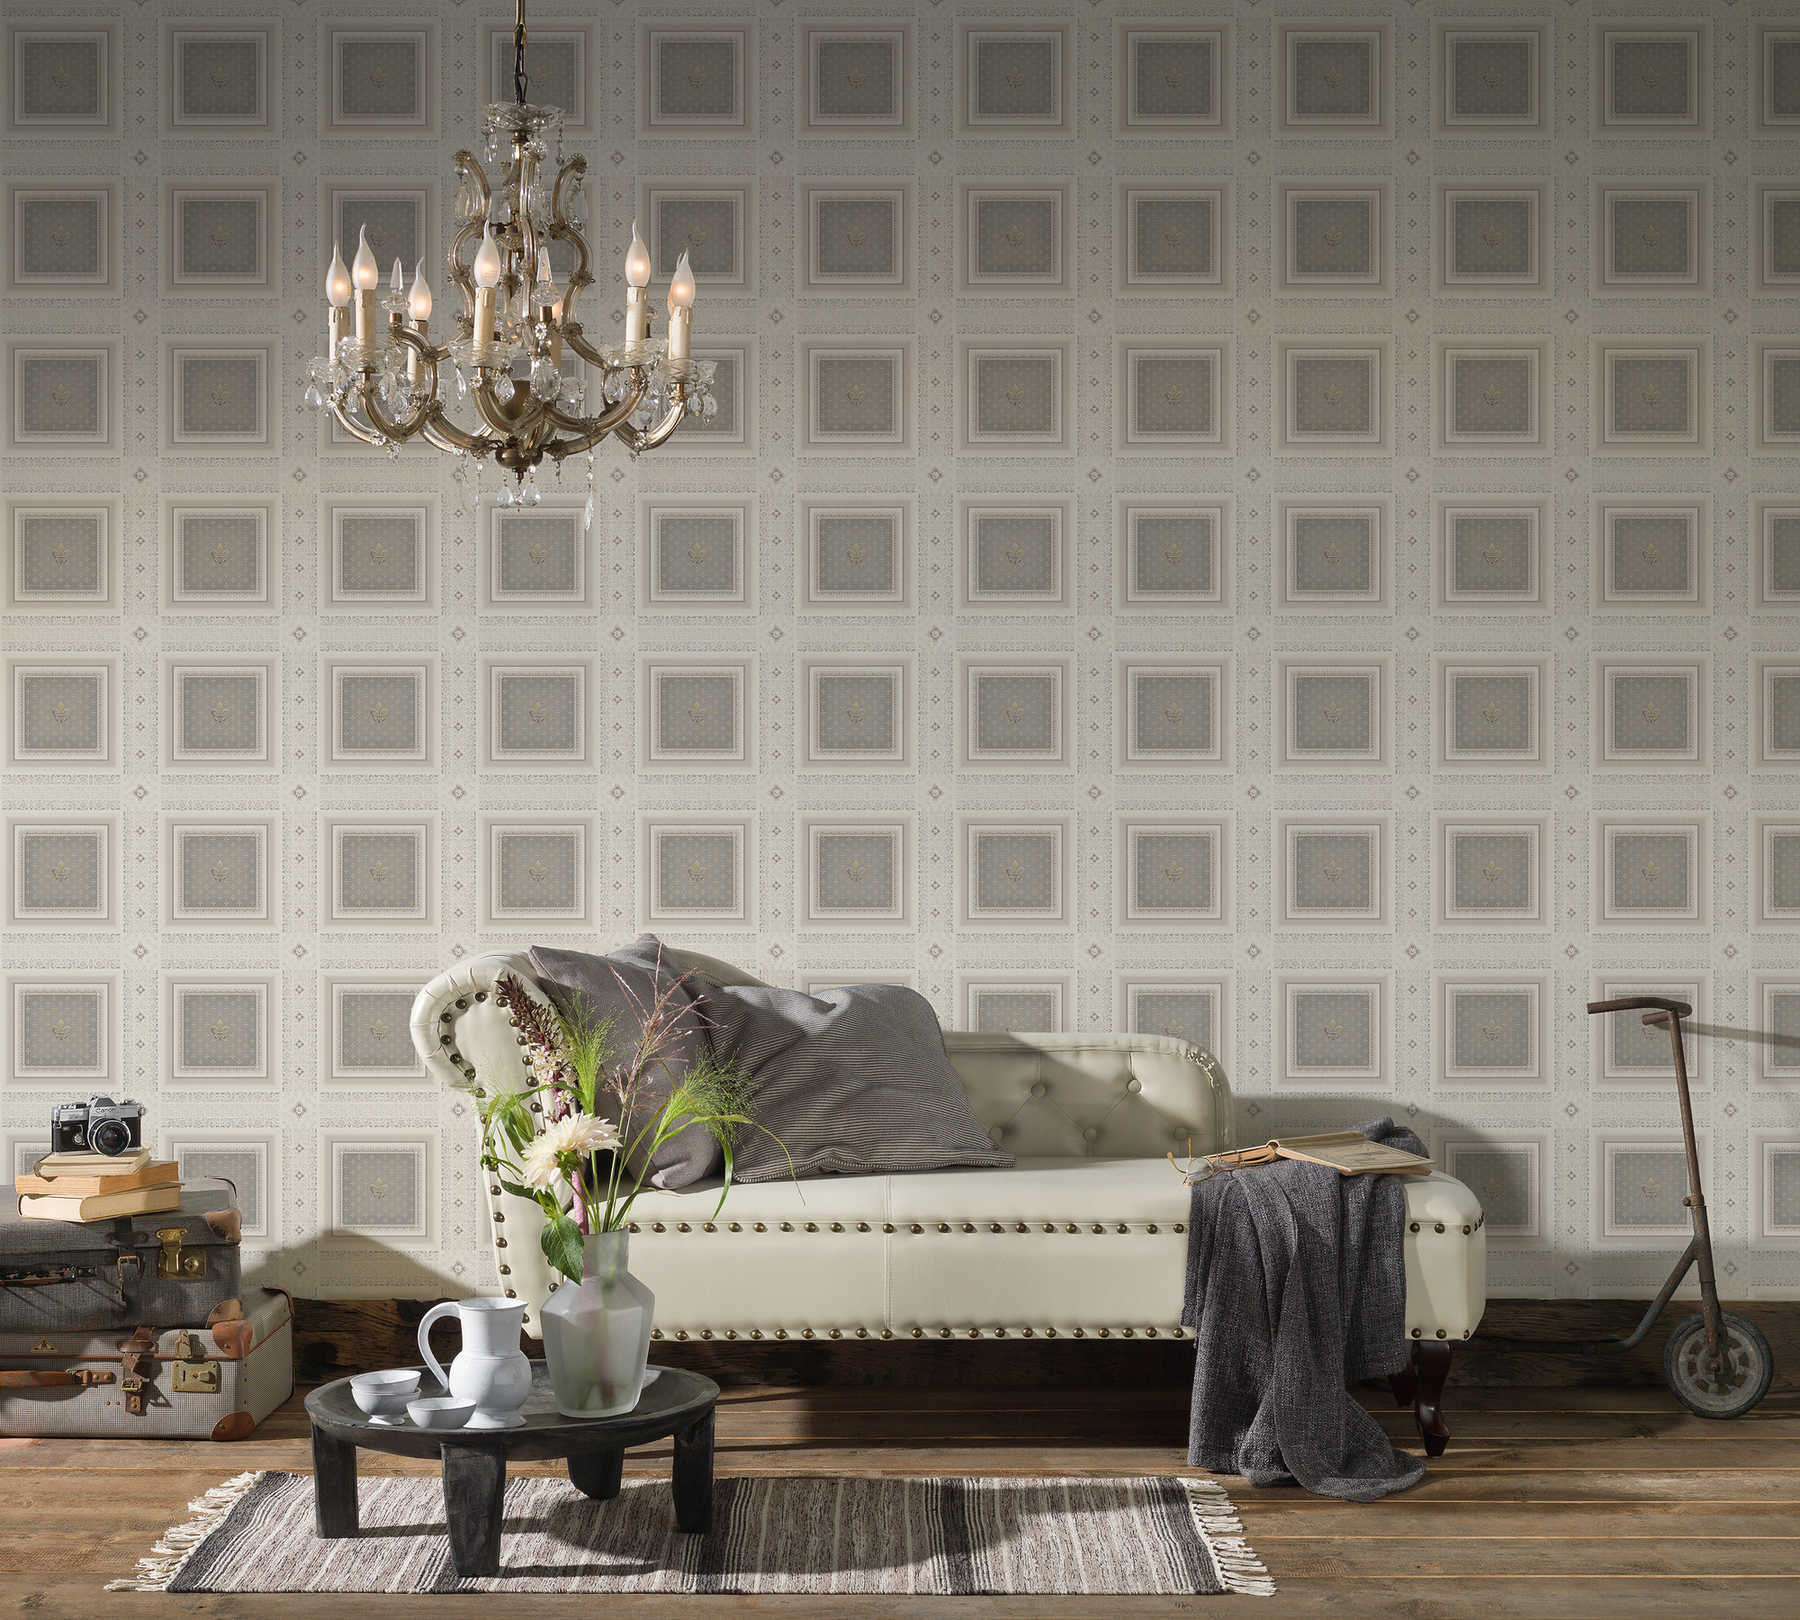             Fleur-de-lis wallpaper with silver design - cream
        